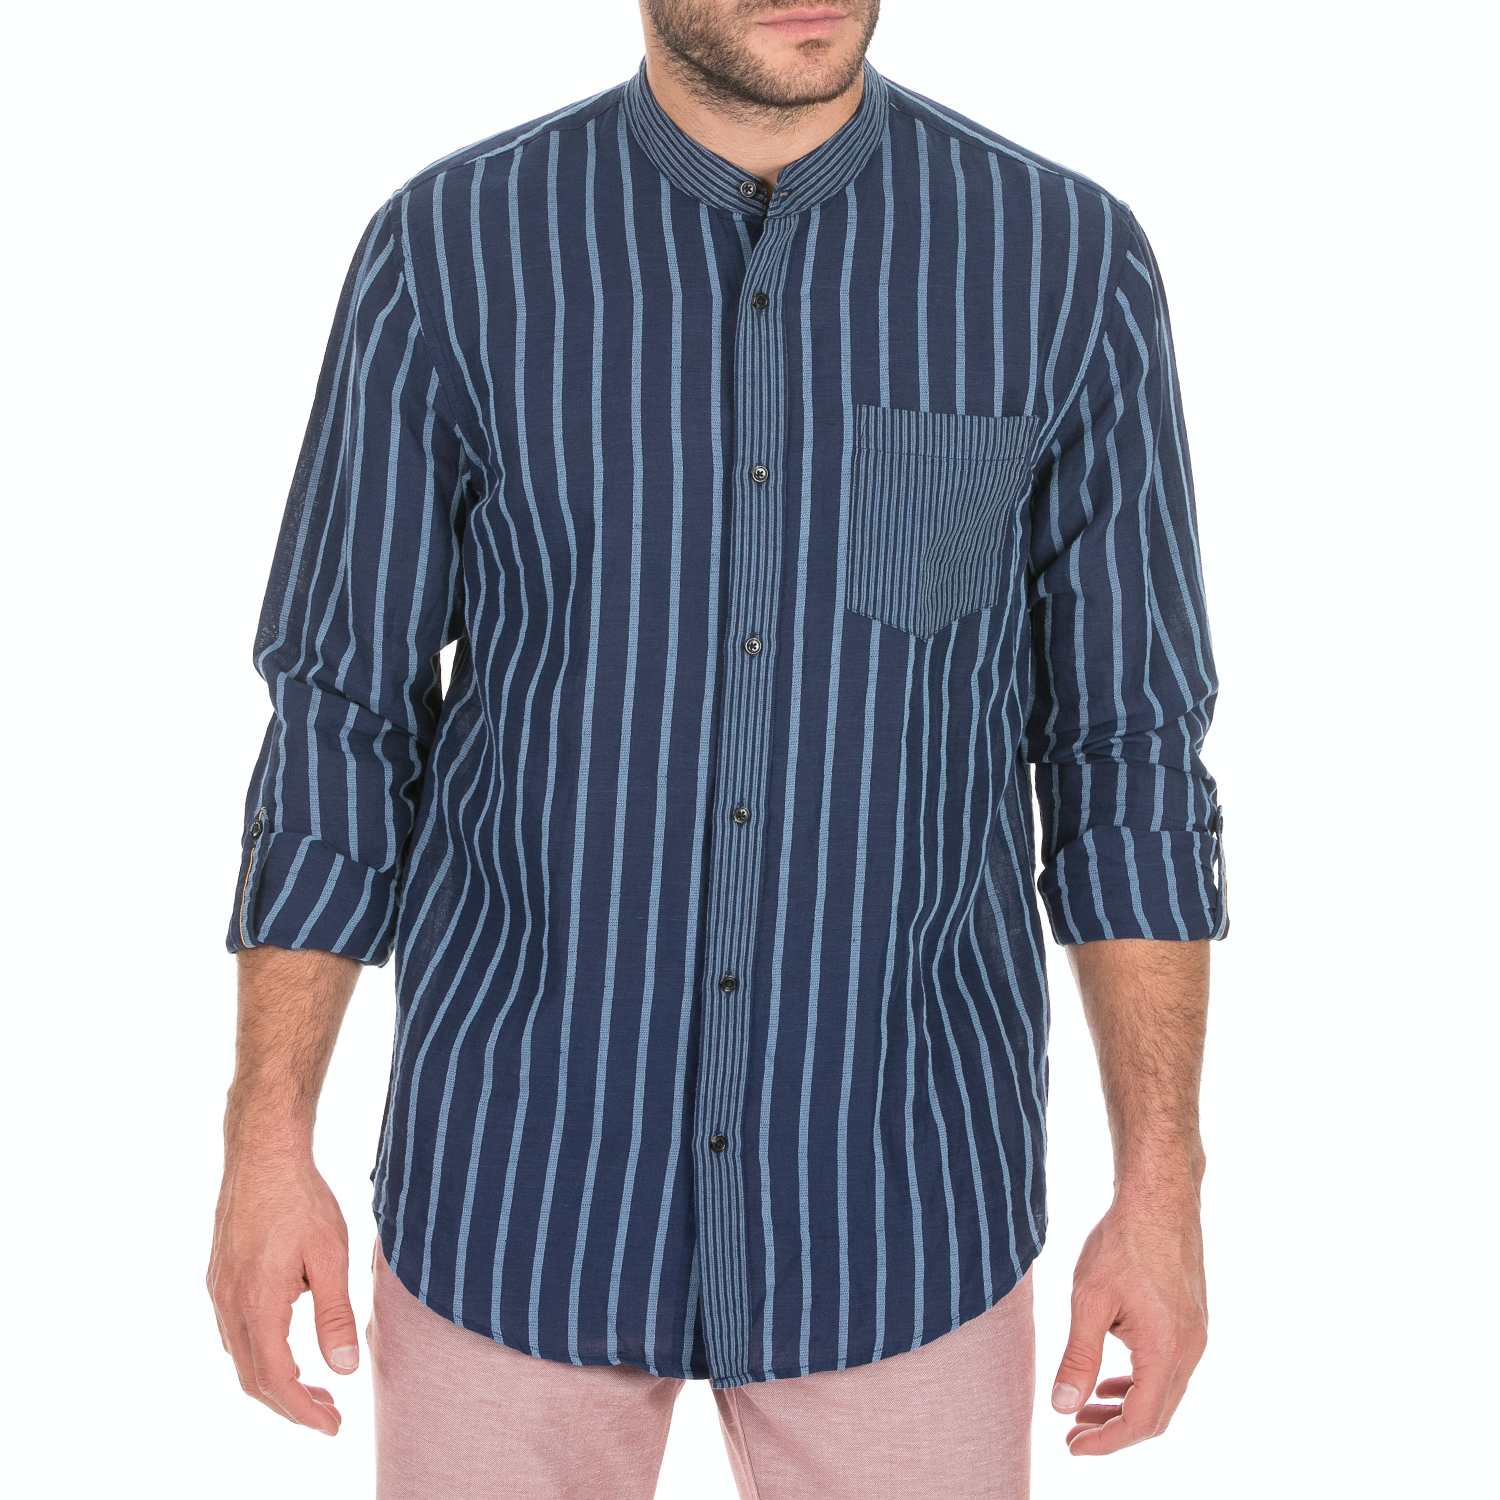 Ανδρικά/Ρούχα/Πουκάμισα/Μακρυμάνικα SCOTCH & SODA - Ανδρικό πουκάμισο SCOTCH & SODA μπλε